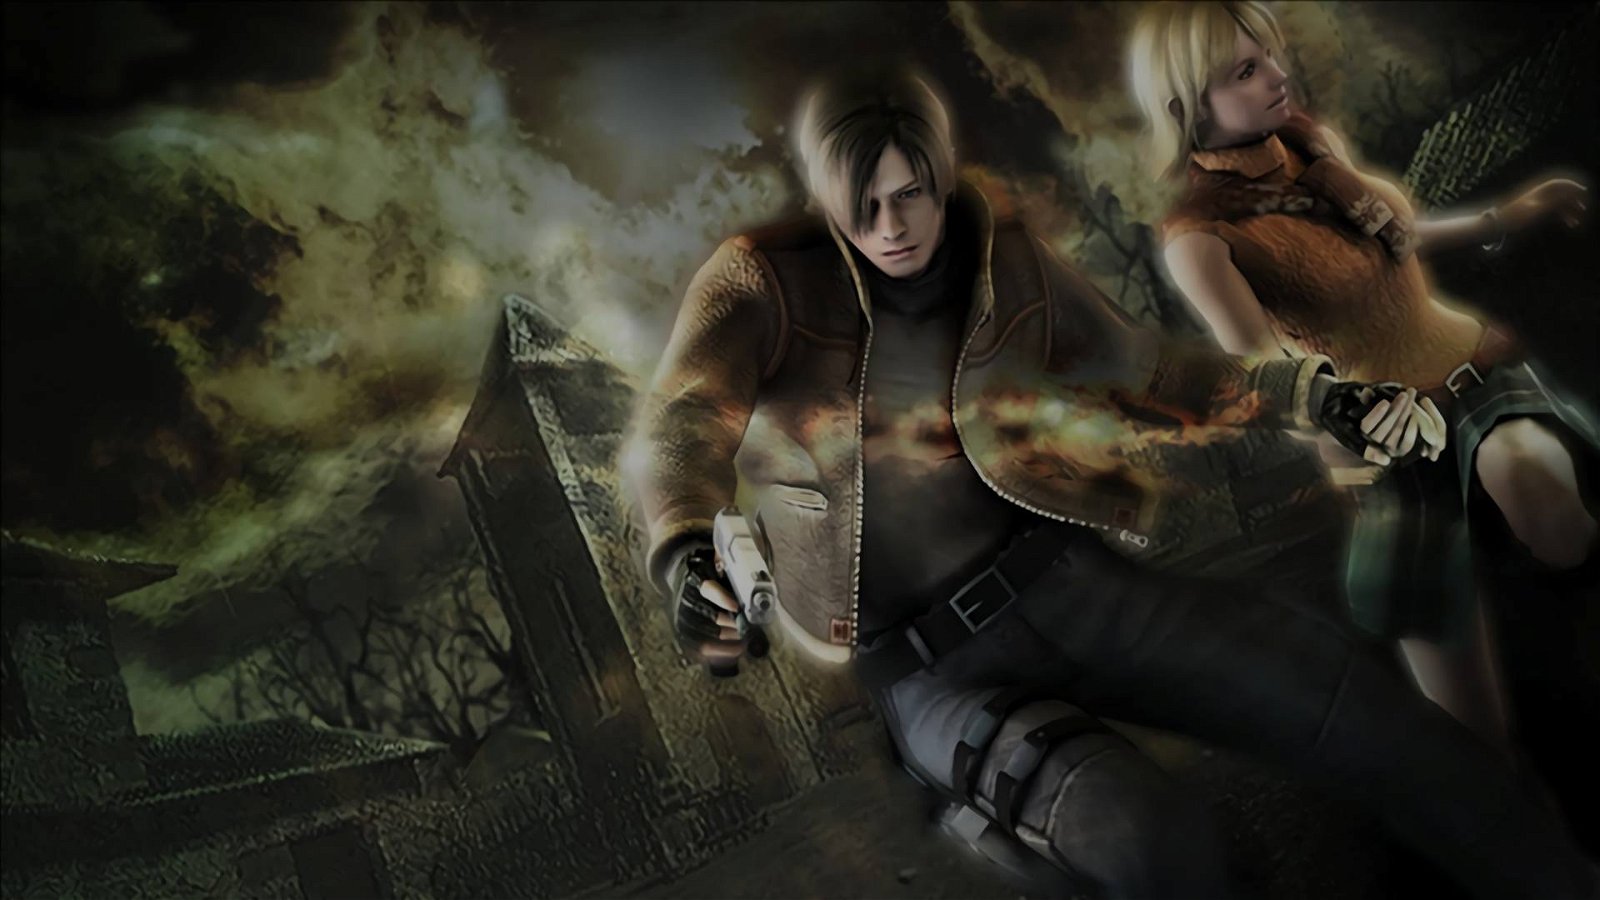 Immagine di Resident Evil 4 diventa il trailer di un horror grazie ad un fan